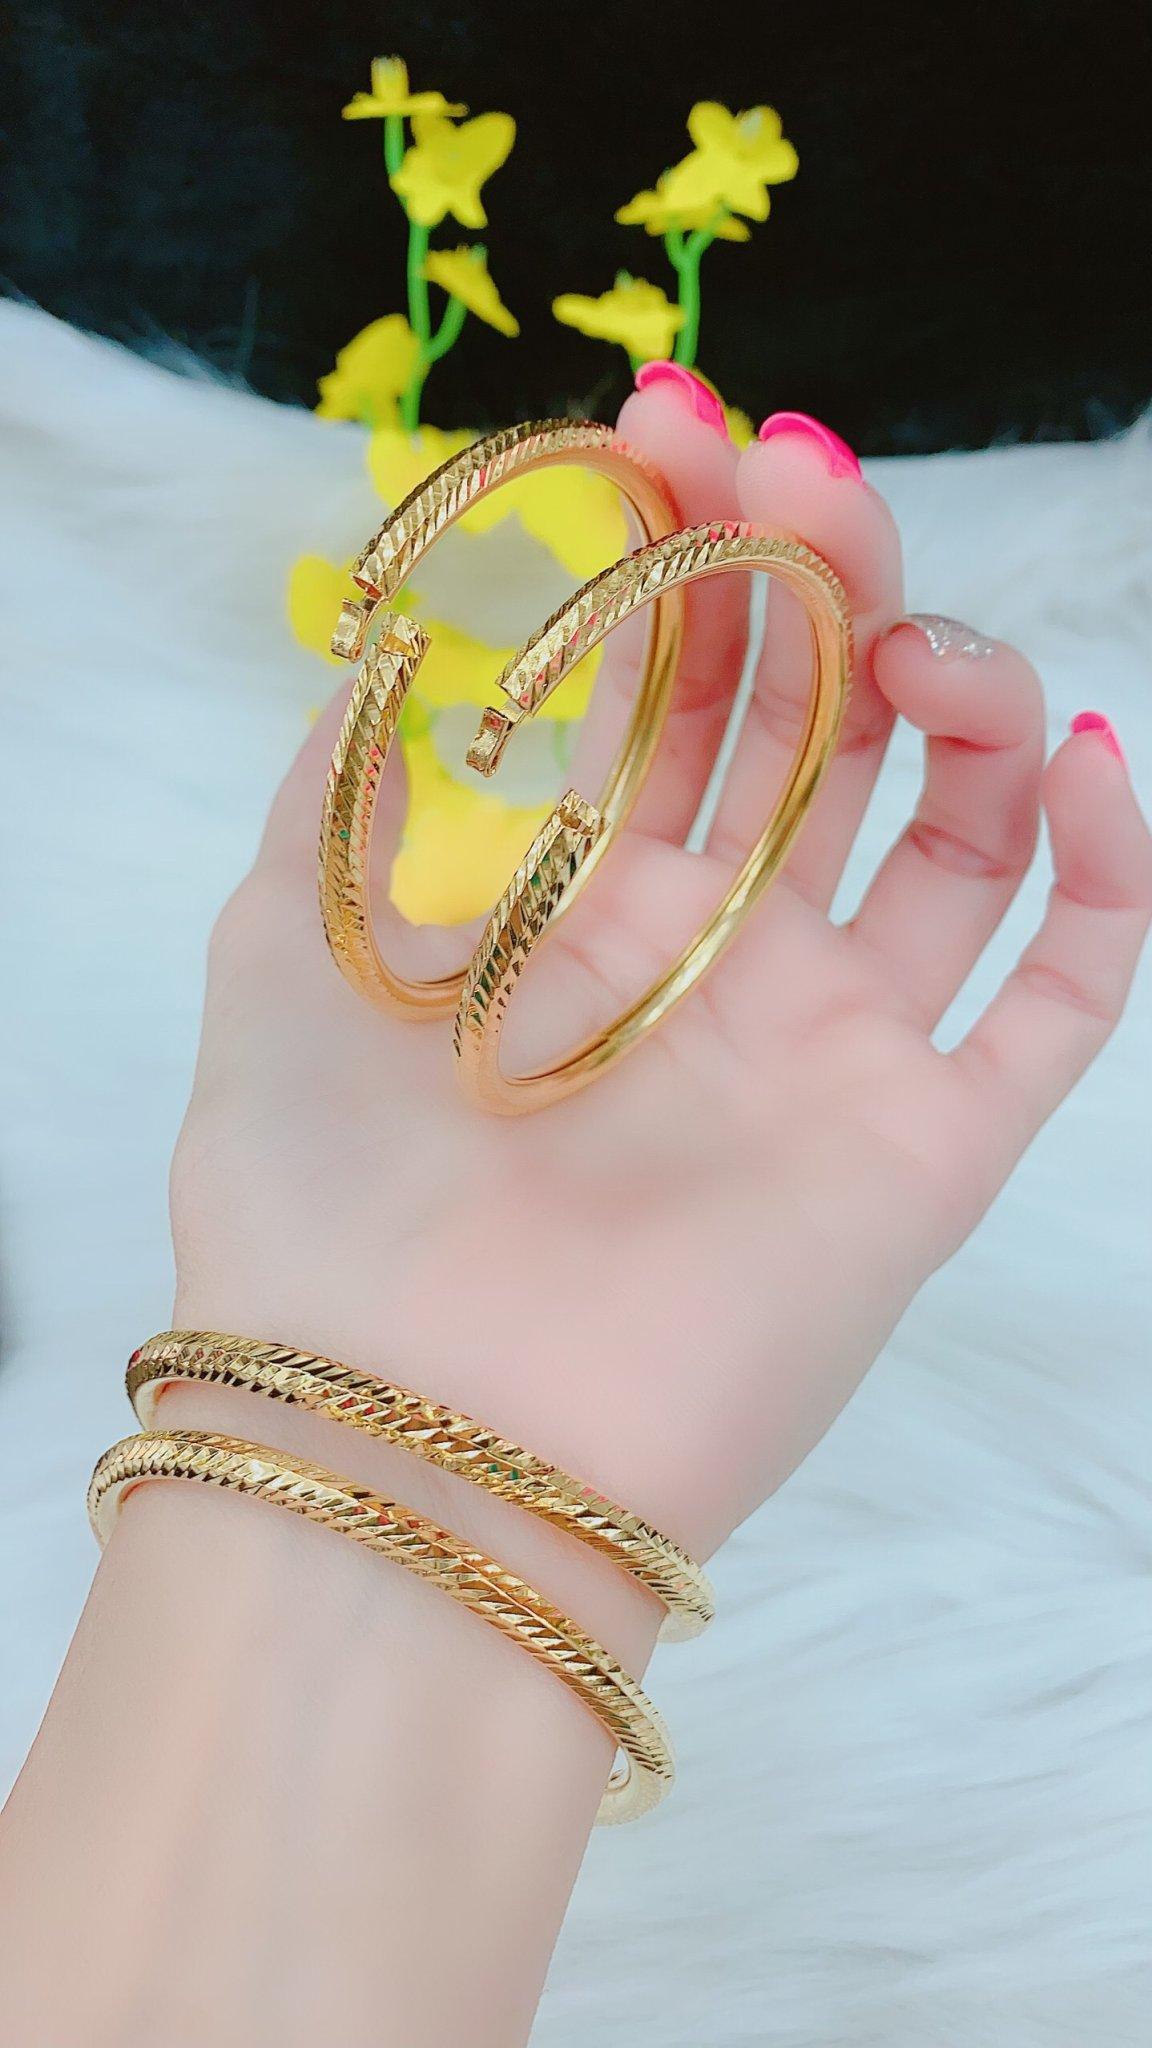 Vòng Tay Nữ Bọng Mạ Vàng 18K là một món trang sức đầy cuốn hút và đẳng cấp. Với kiểu dáng độc đáo cùng chất liệu vàng 18k kết hợp với mạ vàng, chiếc vòng này sẽ làm bạn thêm phần quyến rũ và toát lên vẻ đẹp trẻ trung, hiện đại.